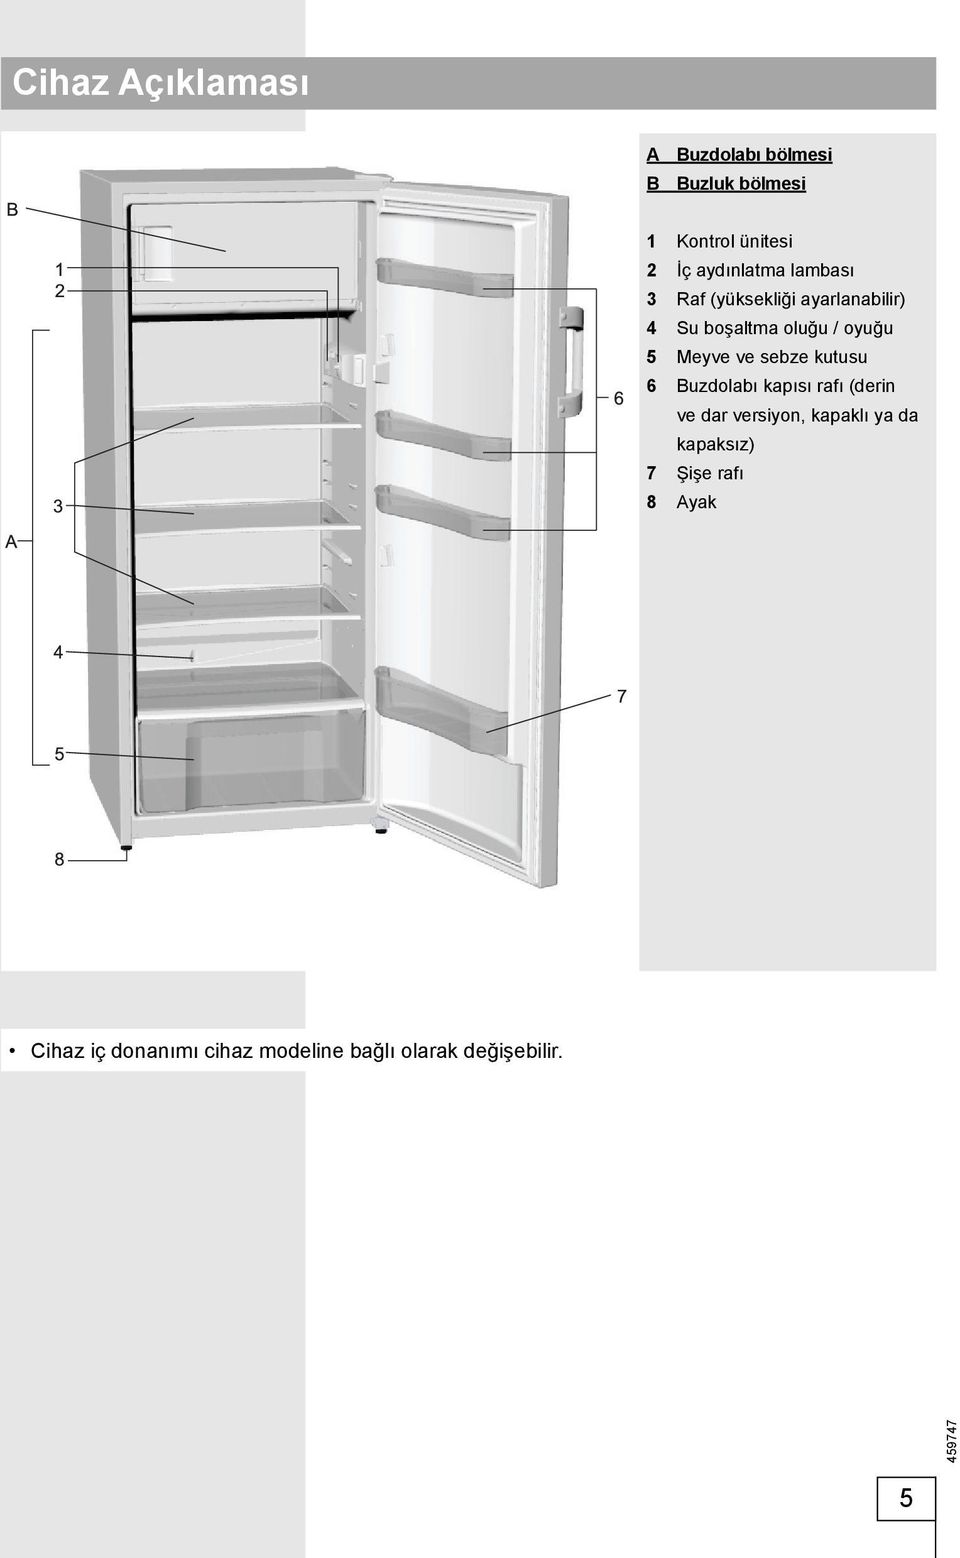 Meyve ve sebze kutusu 6 Buzdolabı kapısı rafı (derin ve dar versiyon, kapaklı ya